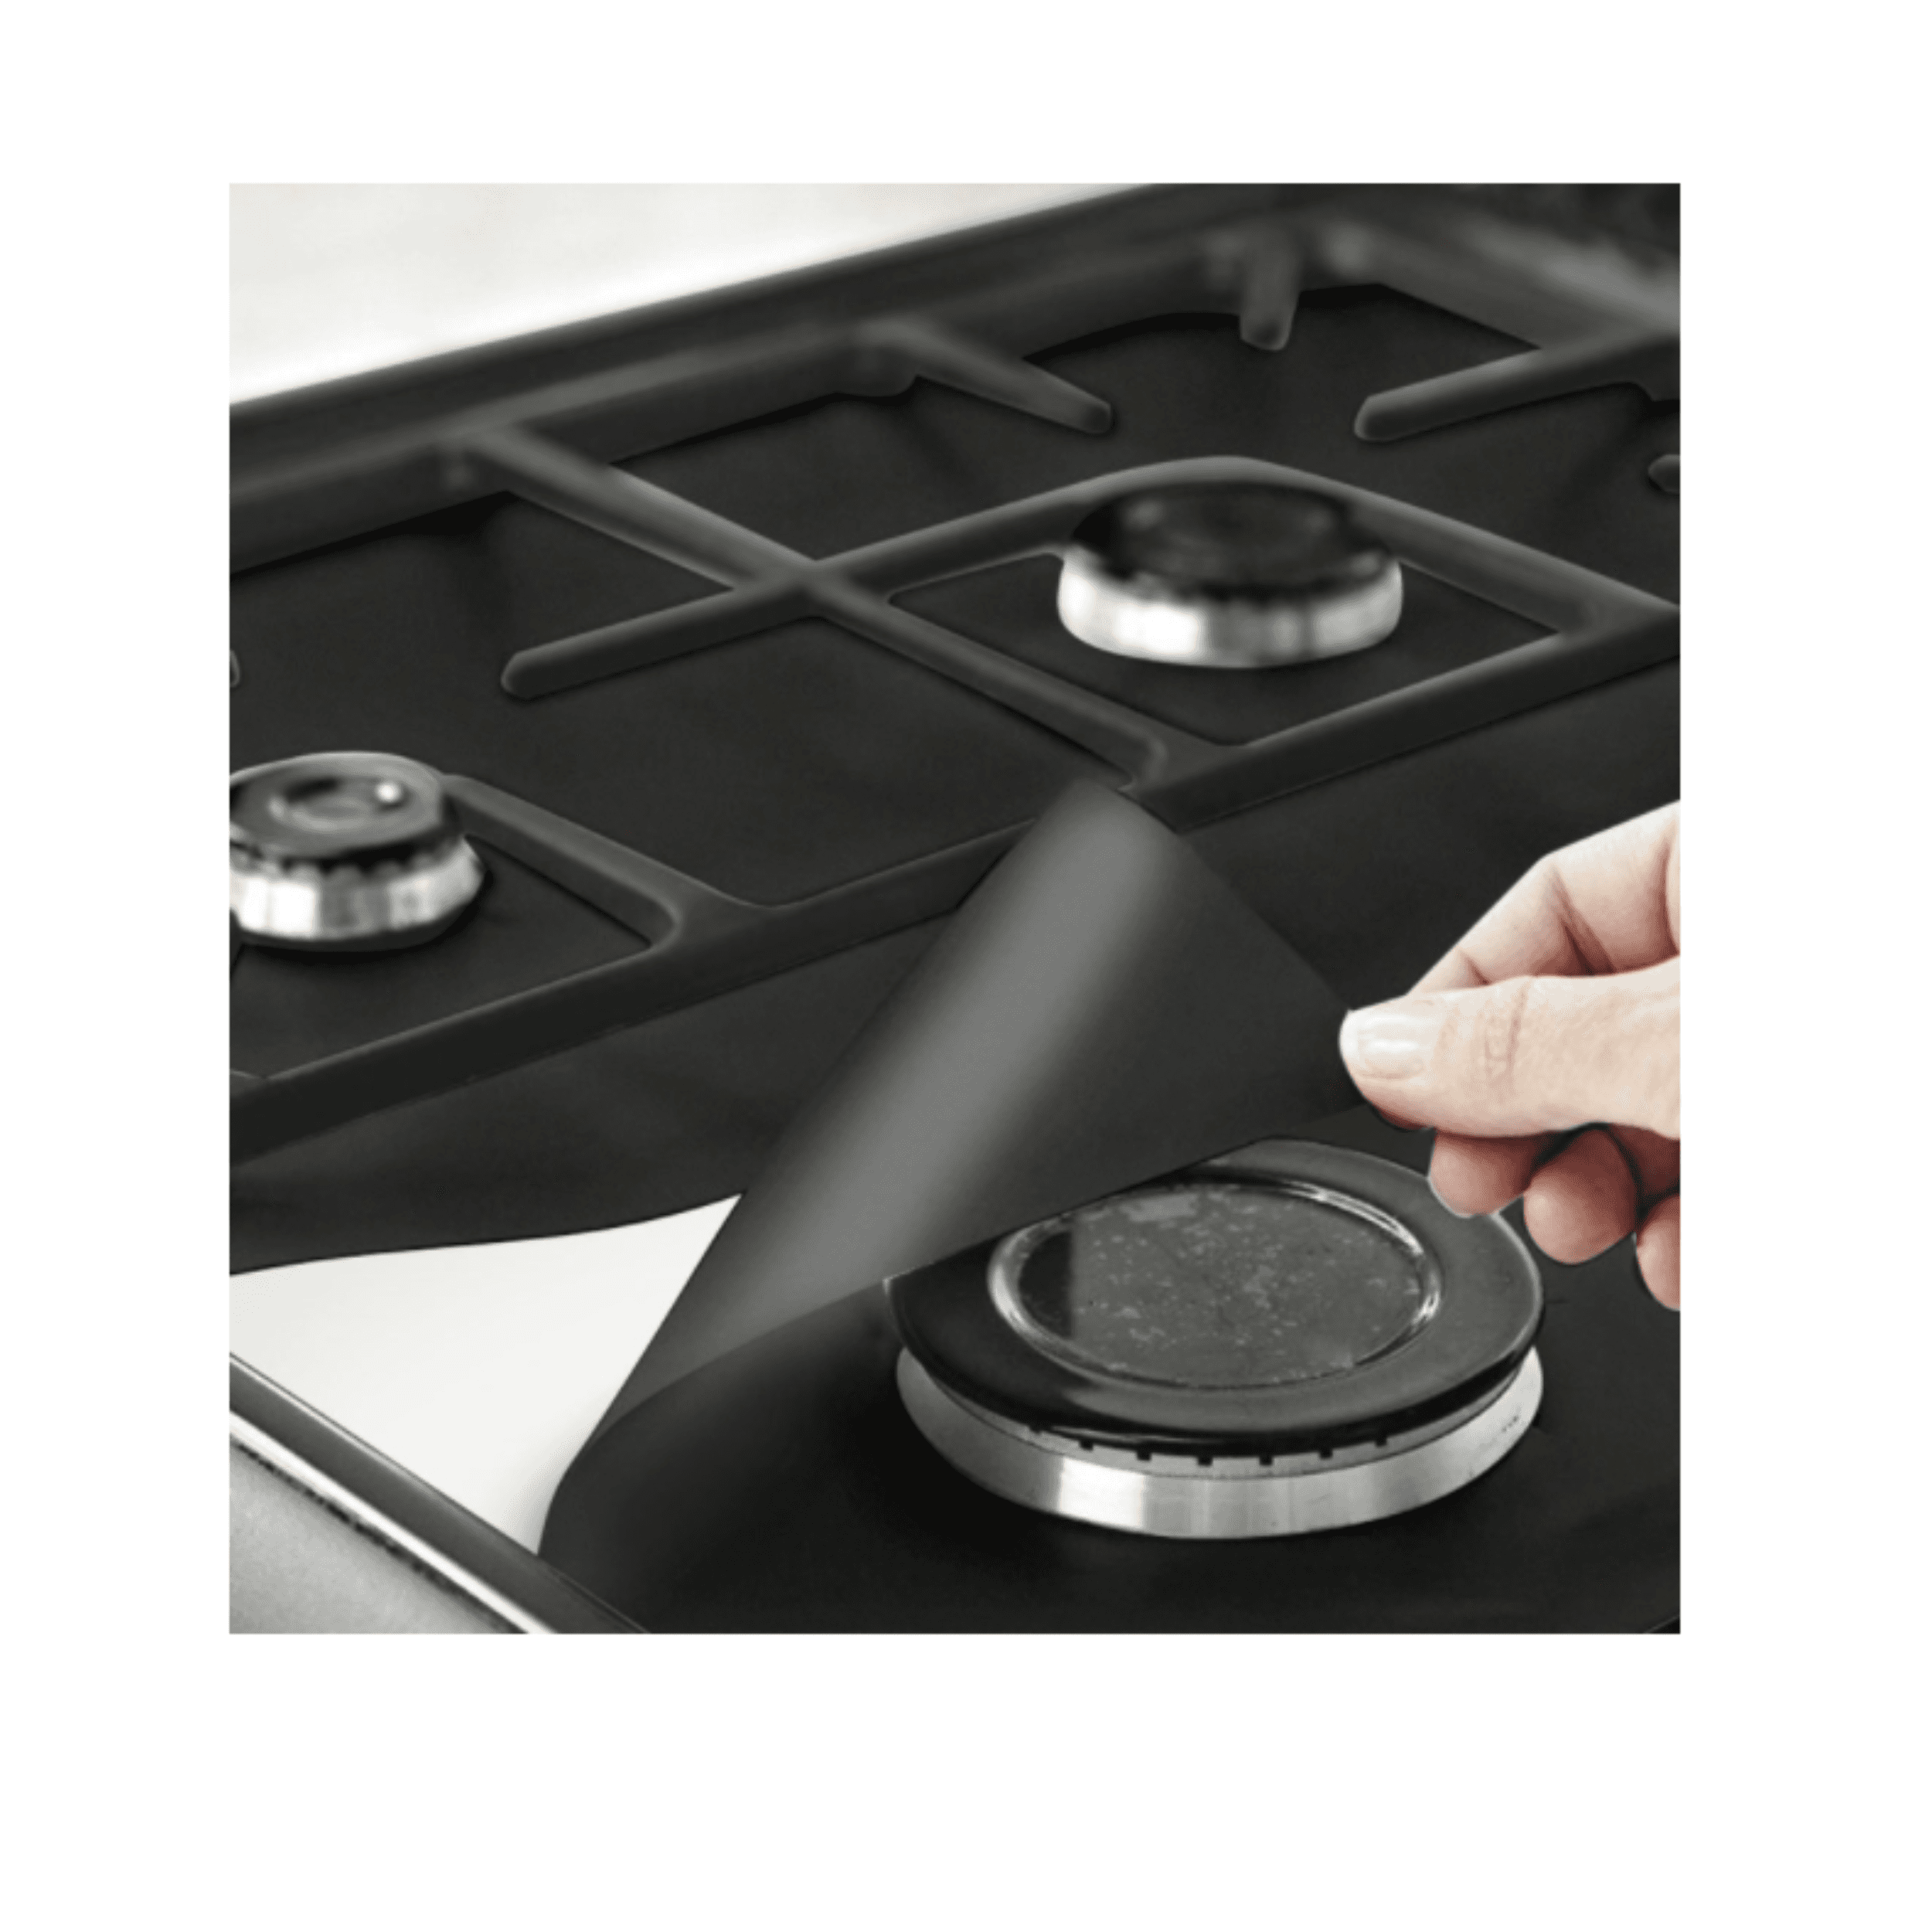 Teflon mat for a gas stove 1 pcs. - black